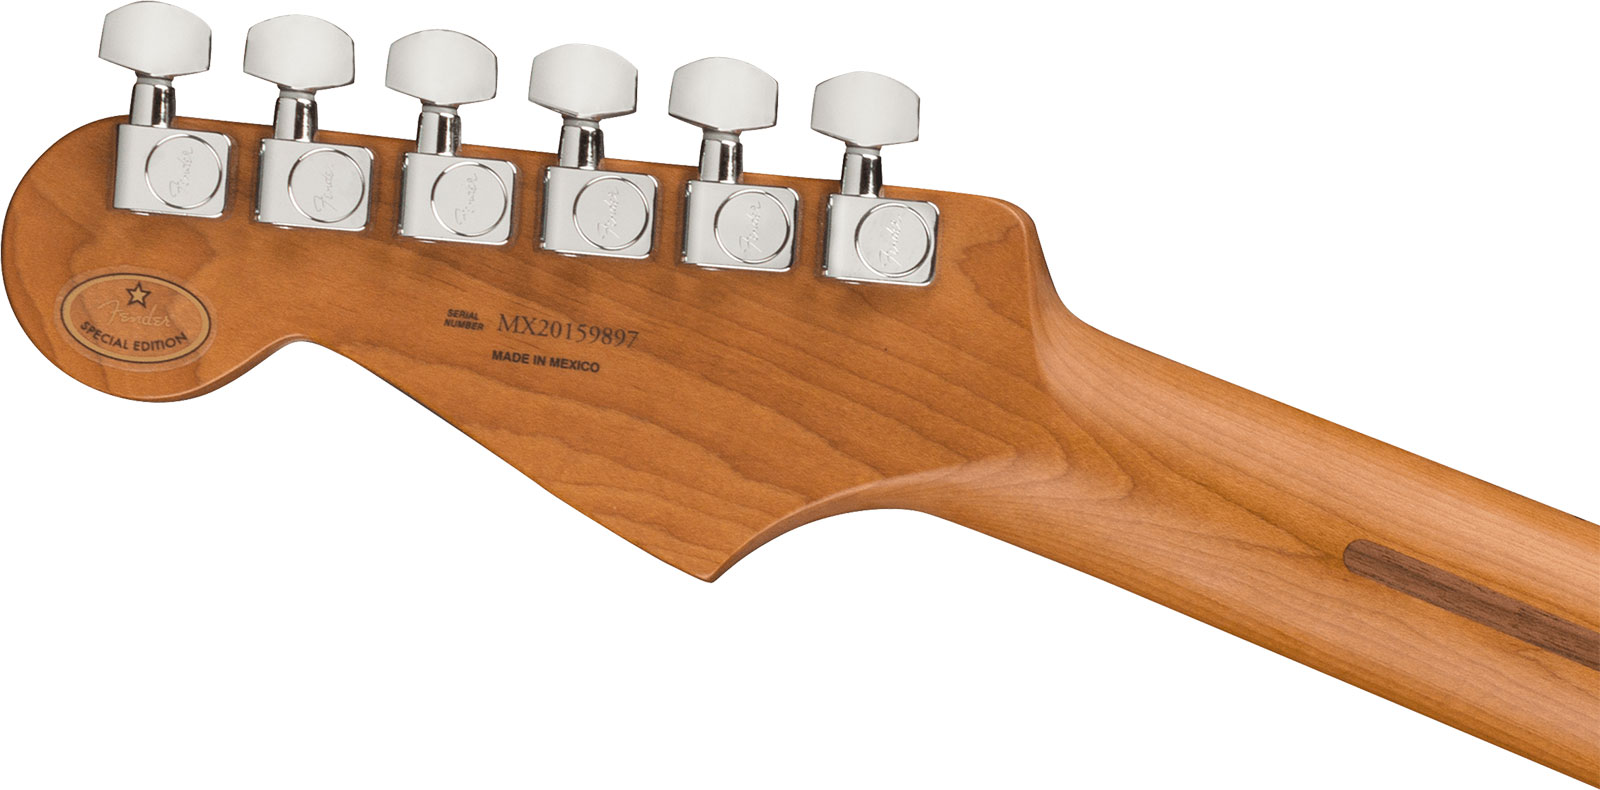 Fender Strat Player Roasted Neck Ltd Mex Hss Trem Mn - Shell Pink - Str shape electric guitar - Variation 3